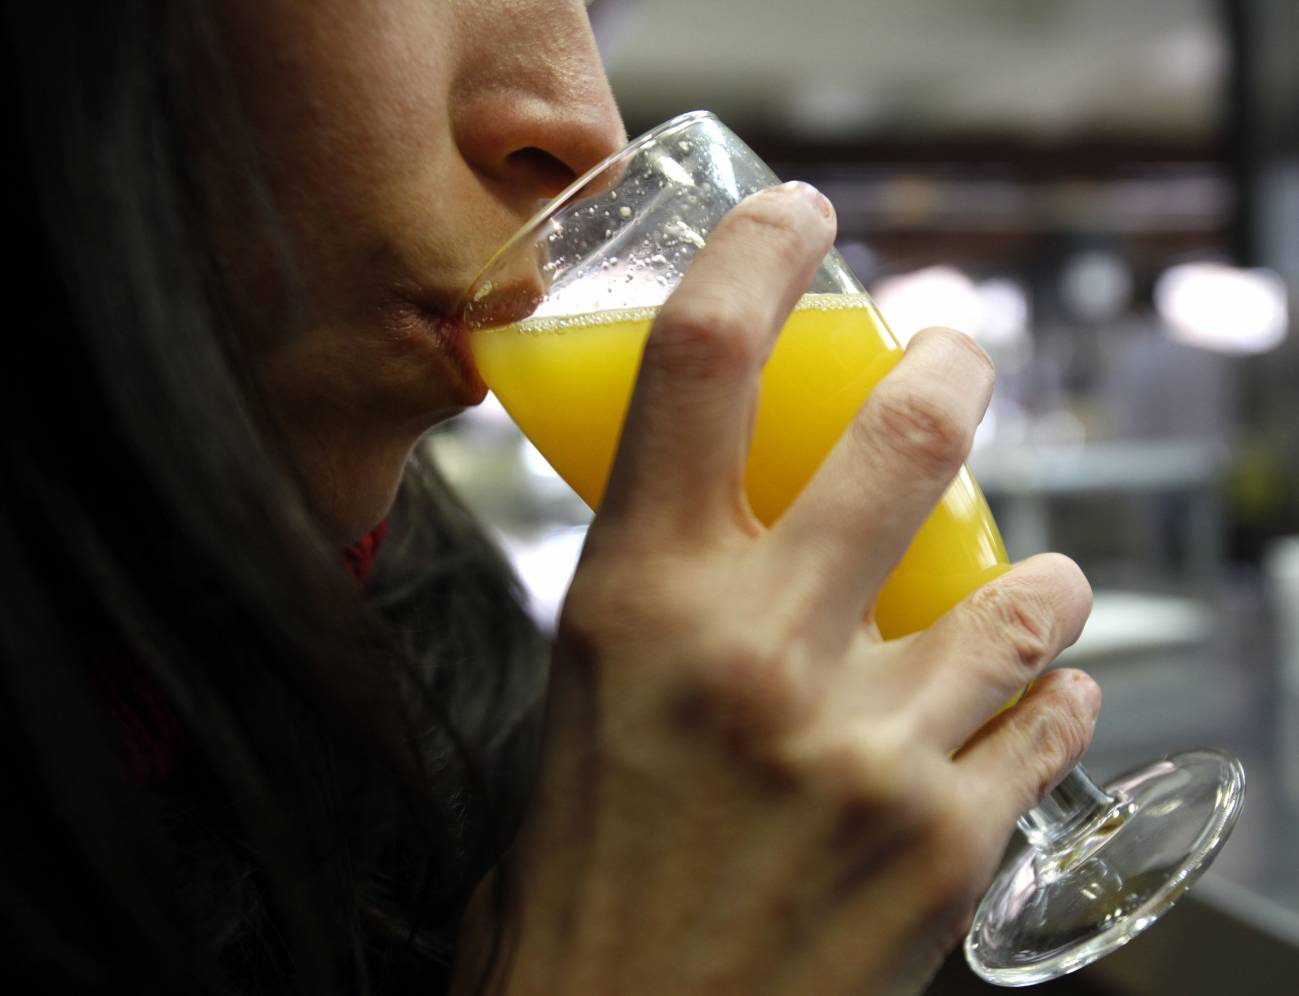 Detectan contaminación microbiana en zumos de naranja exprimida en bares y restaurantes